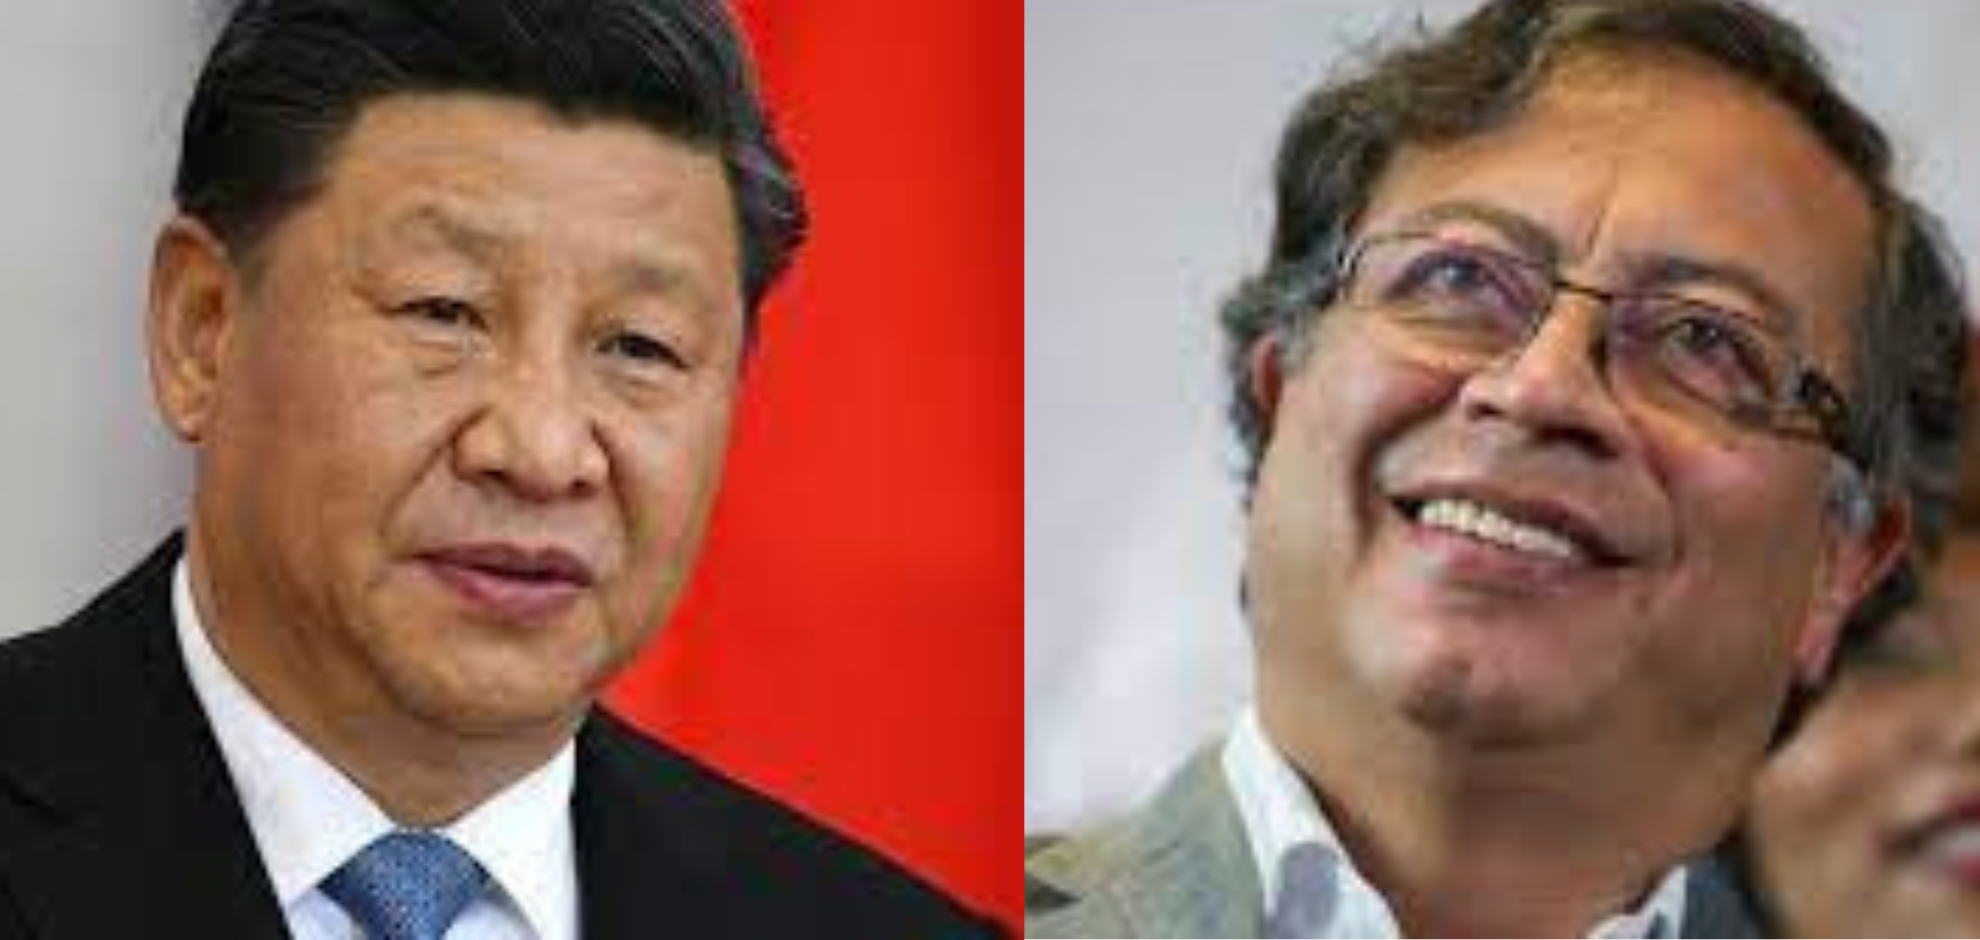 Xi Jinping, presidente de China, envía mensaje a Gustavo Petro: “Será un punto de inicio de las relaciones bilaterales”